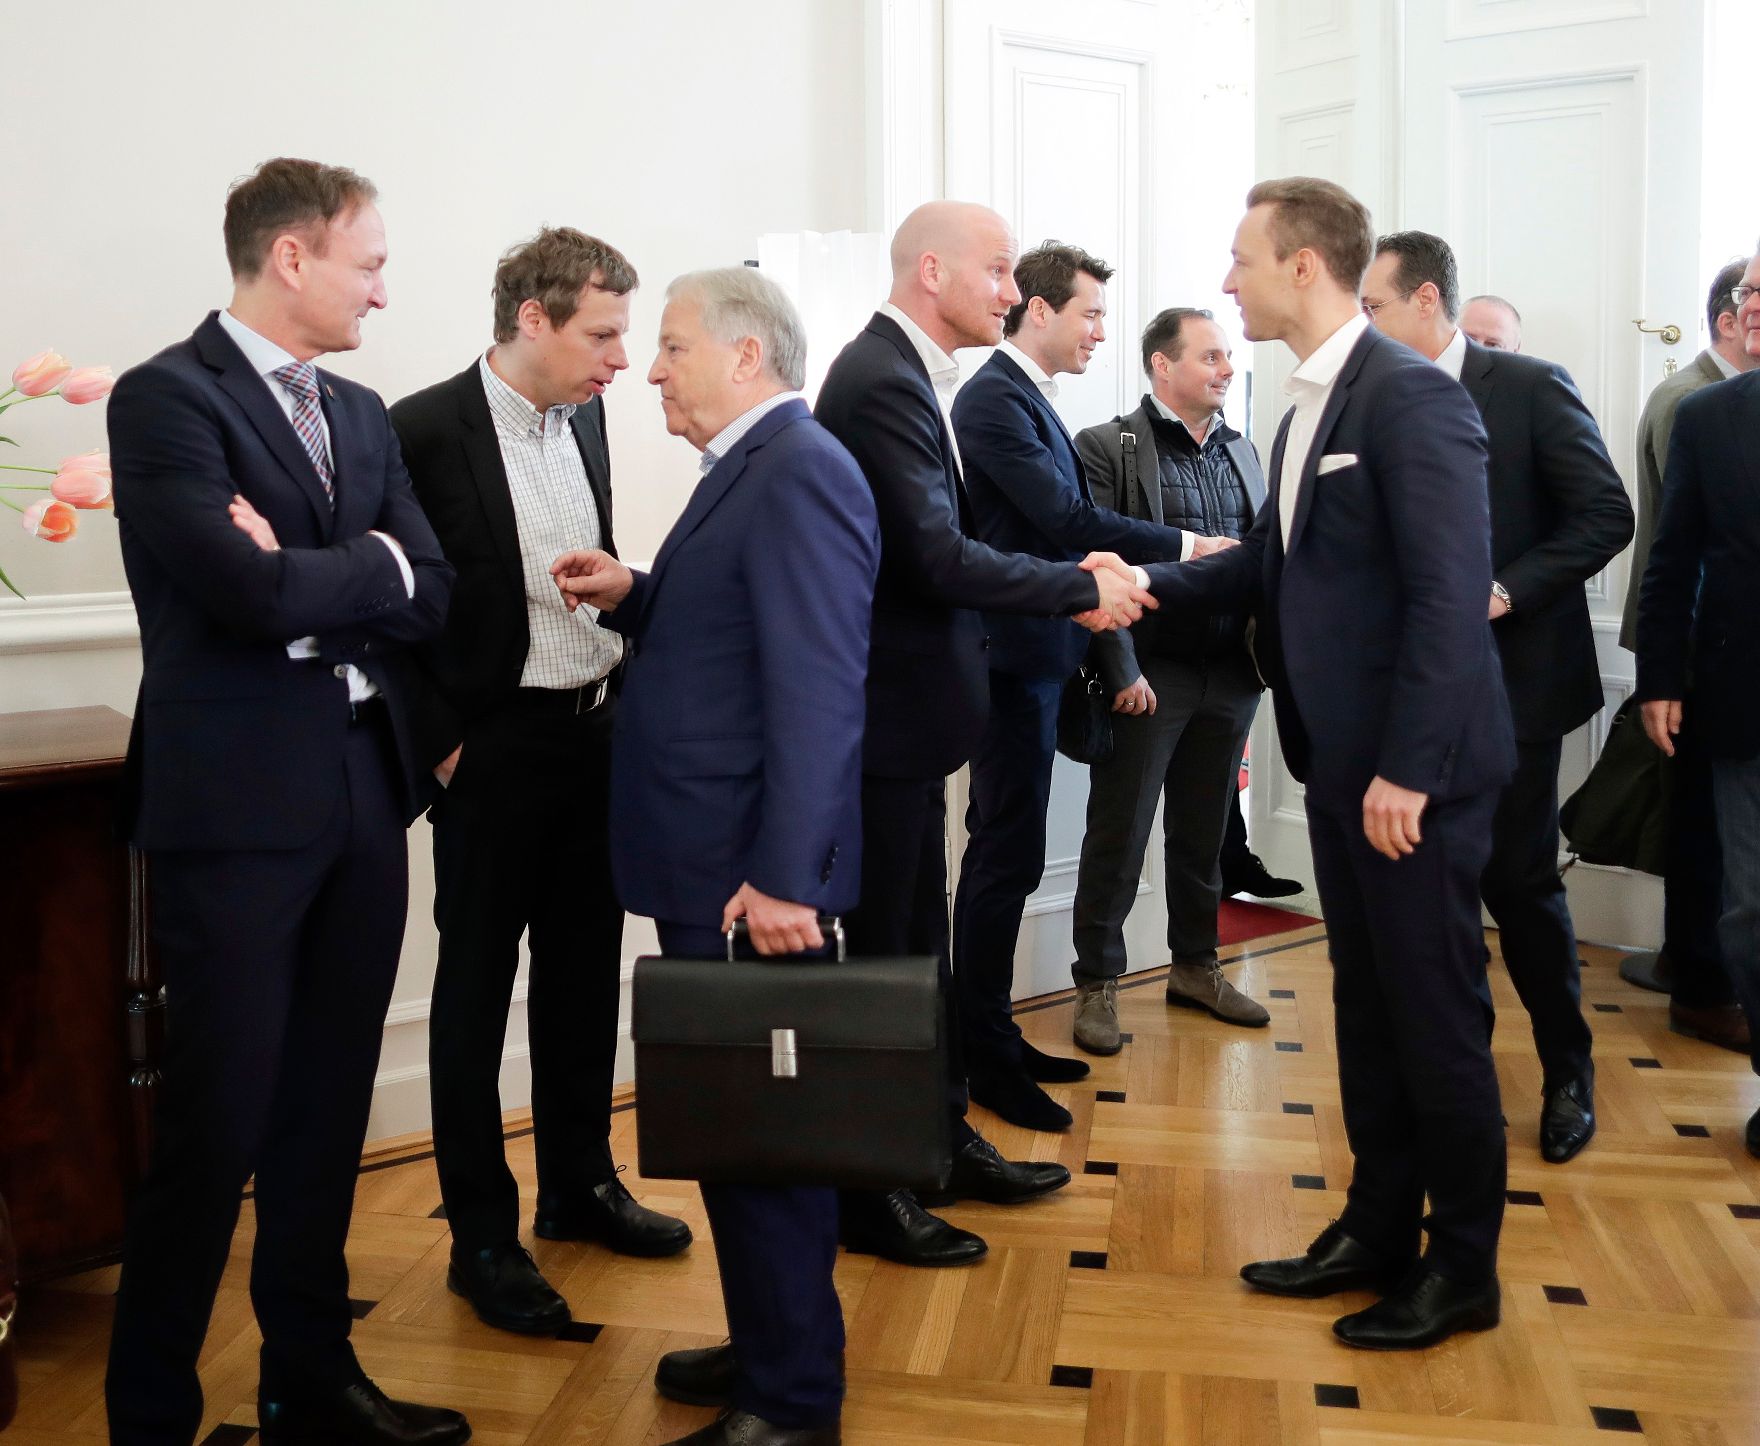 Am 14. März 2019 lud Bundesminister Gernot Blümel gemeinsam mit Vizekanzler Heinz-Christian Strache Vertreter der Österreichischen Fußballverbände zu einem Gespräch über das Fernsehexklusivrechtsgestz ein.